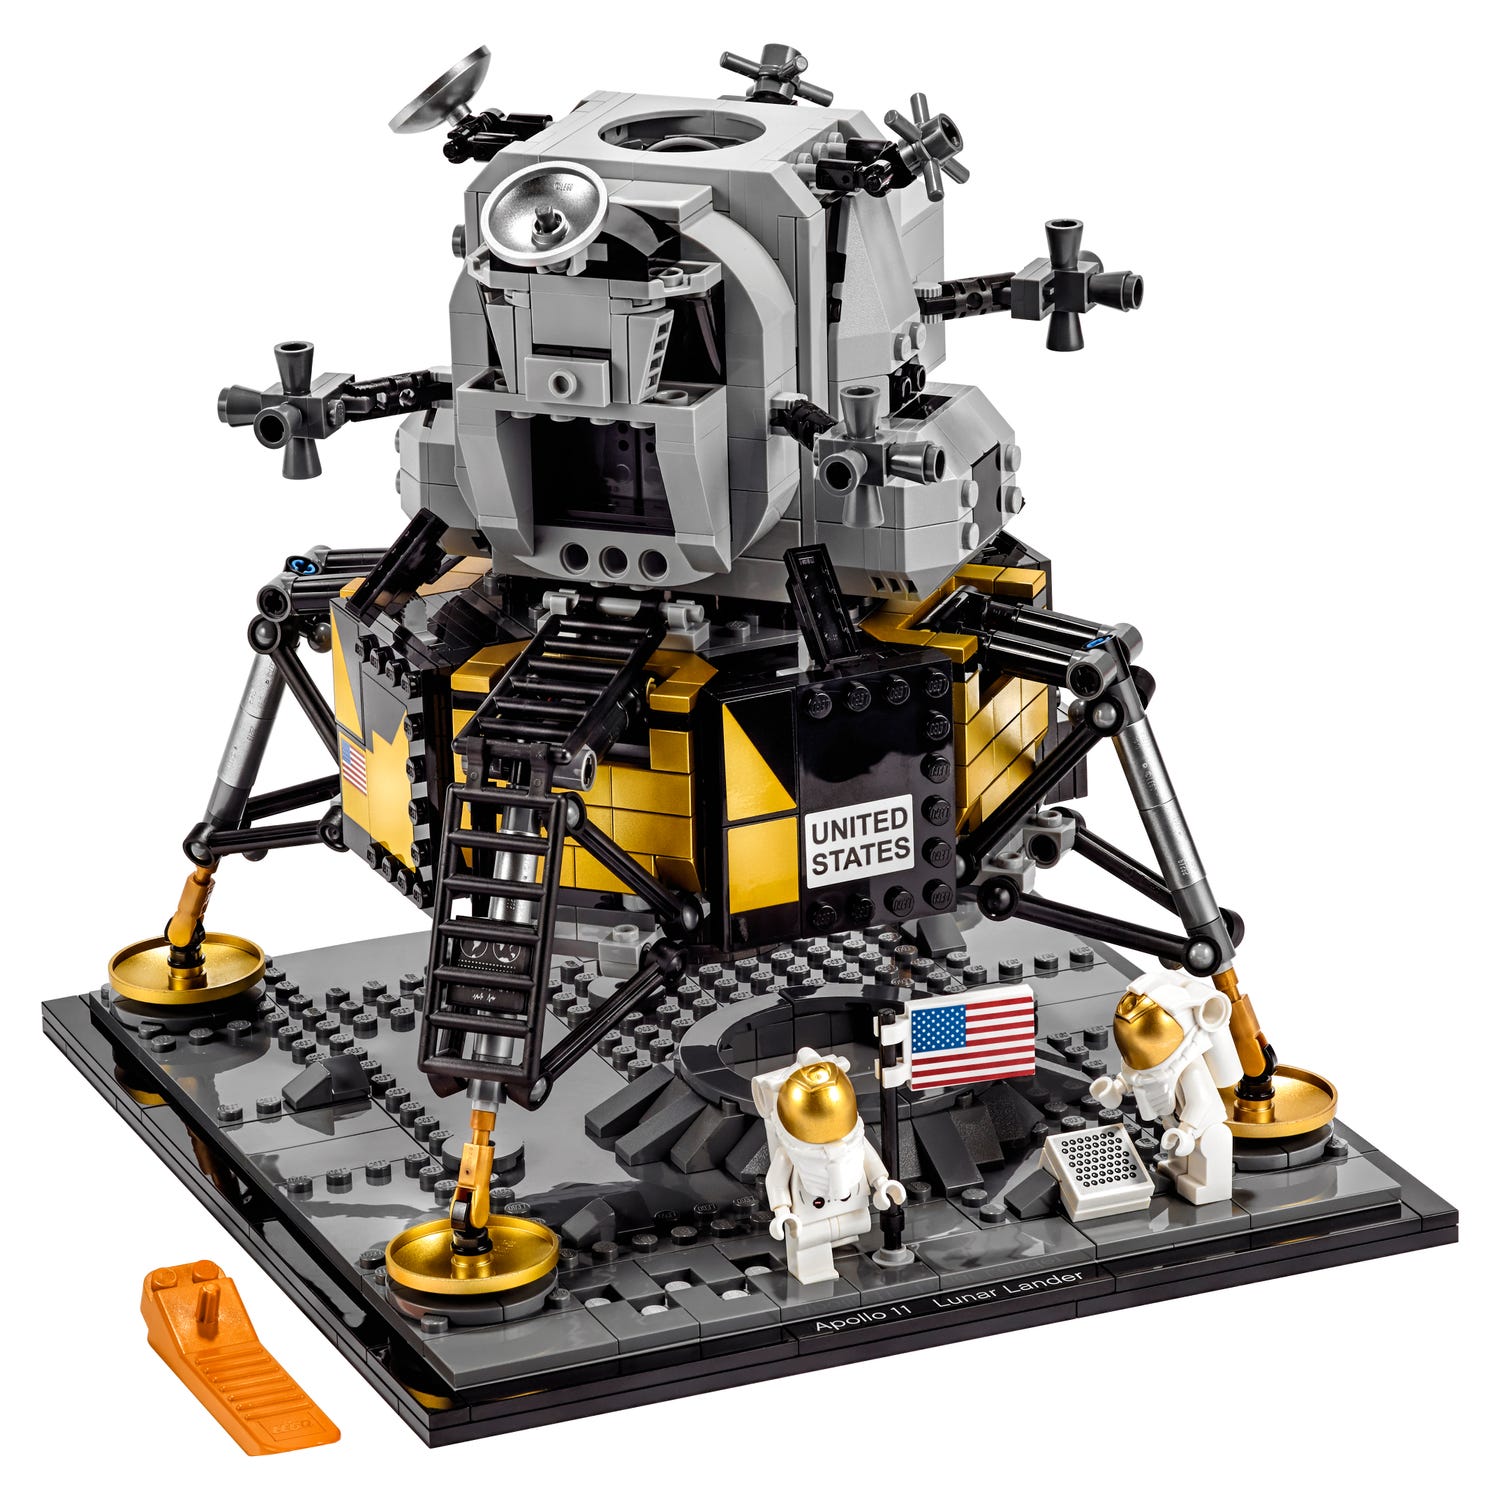 Nasa Apollo 11 Lunar Lander Creator Expert Buy Online At The Official Lego Shop Us